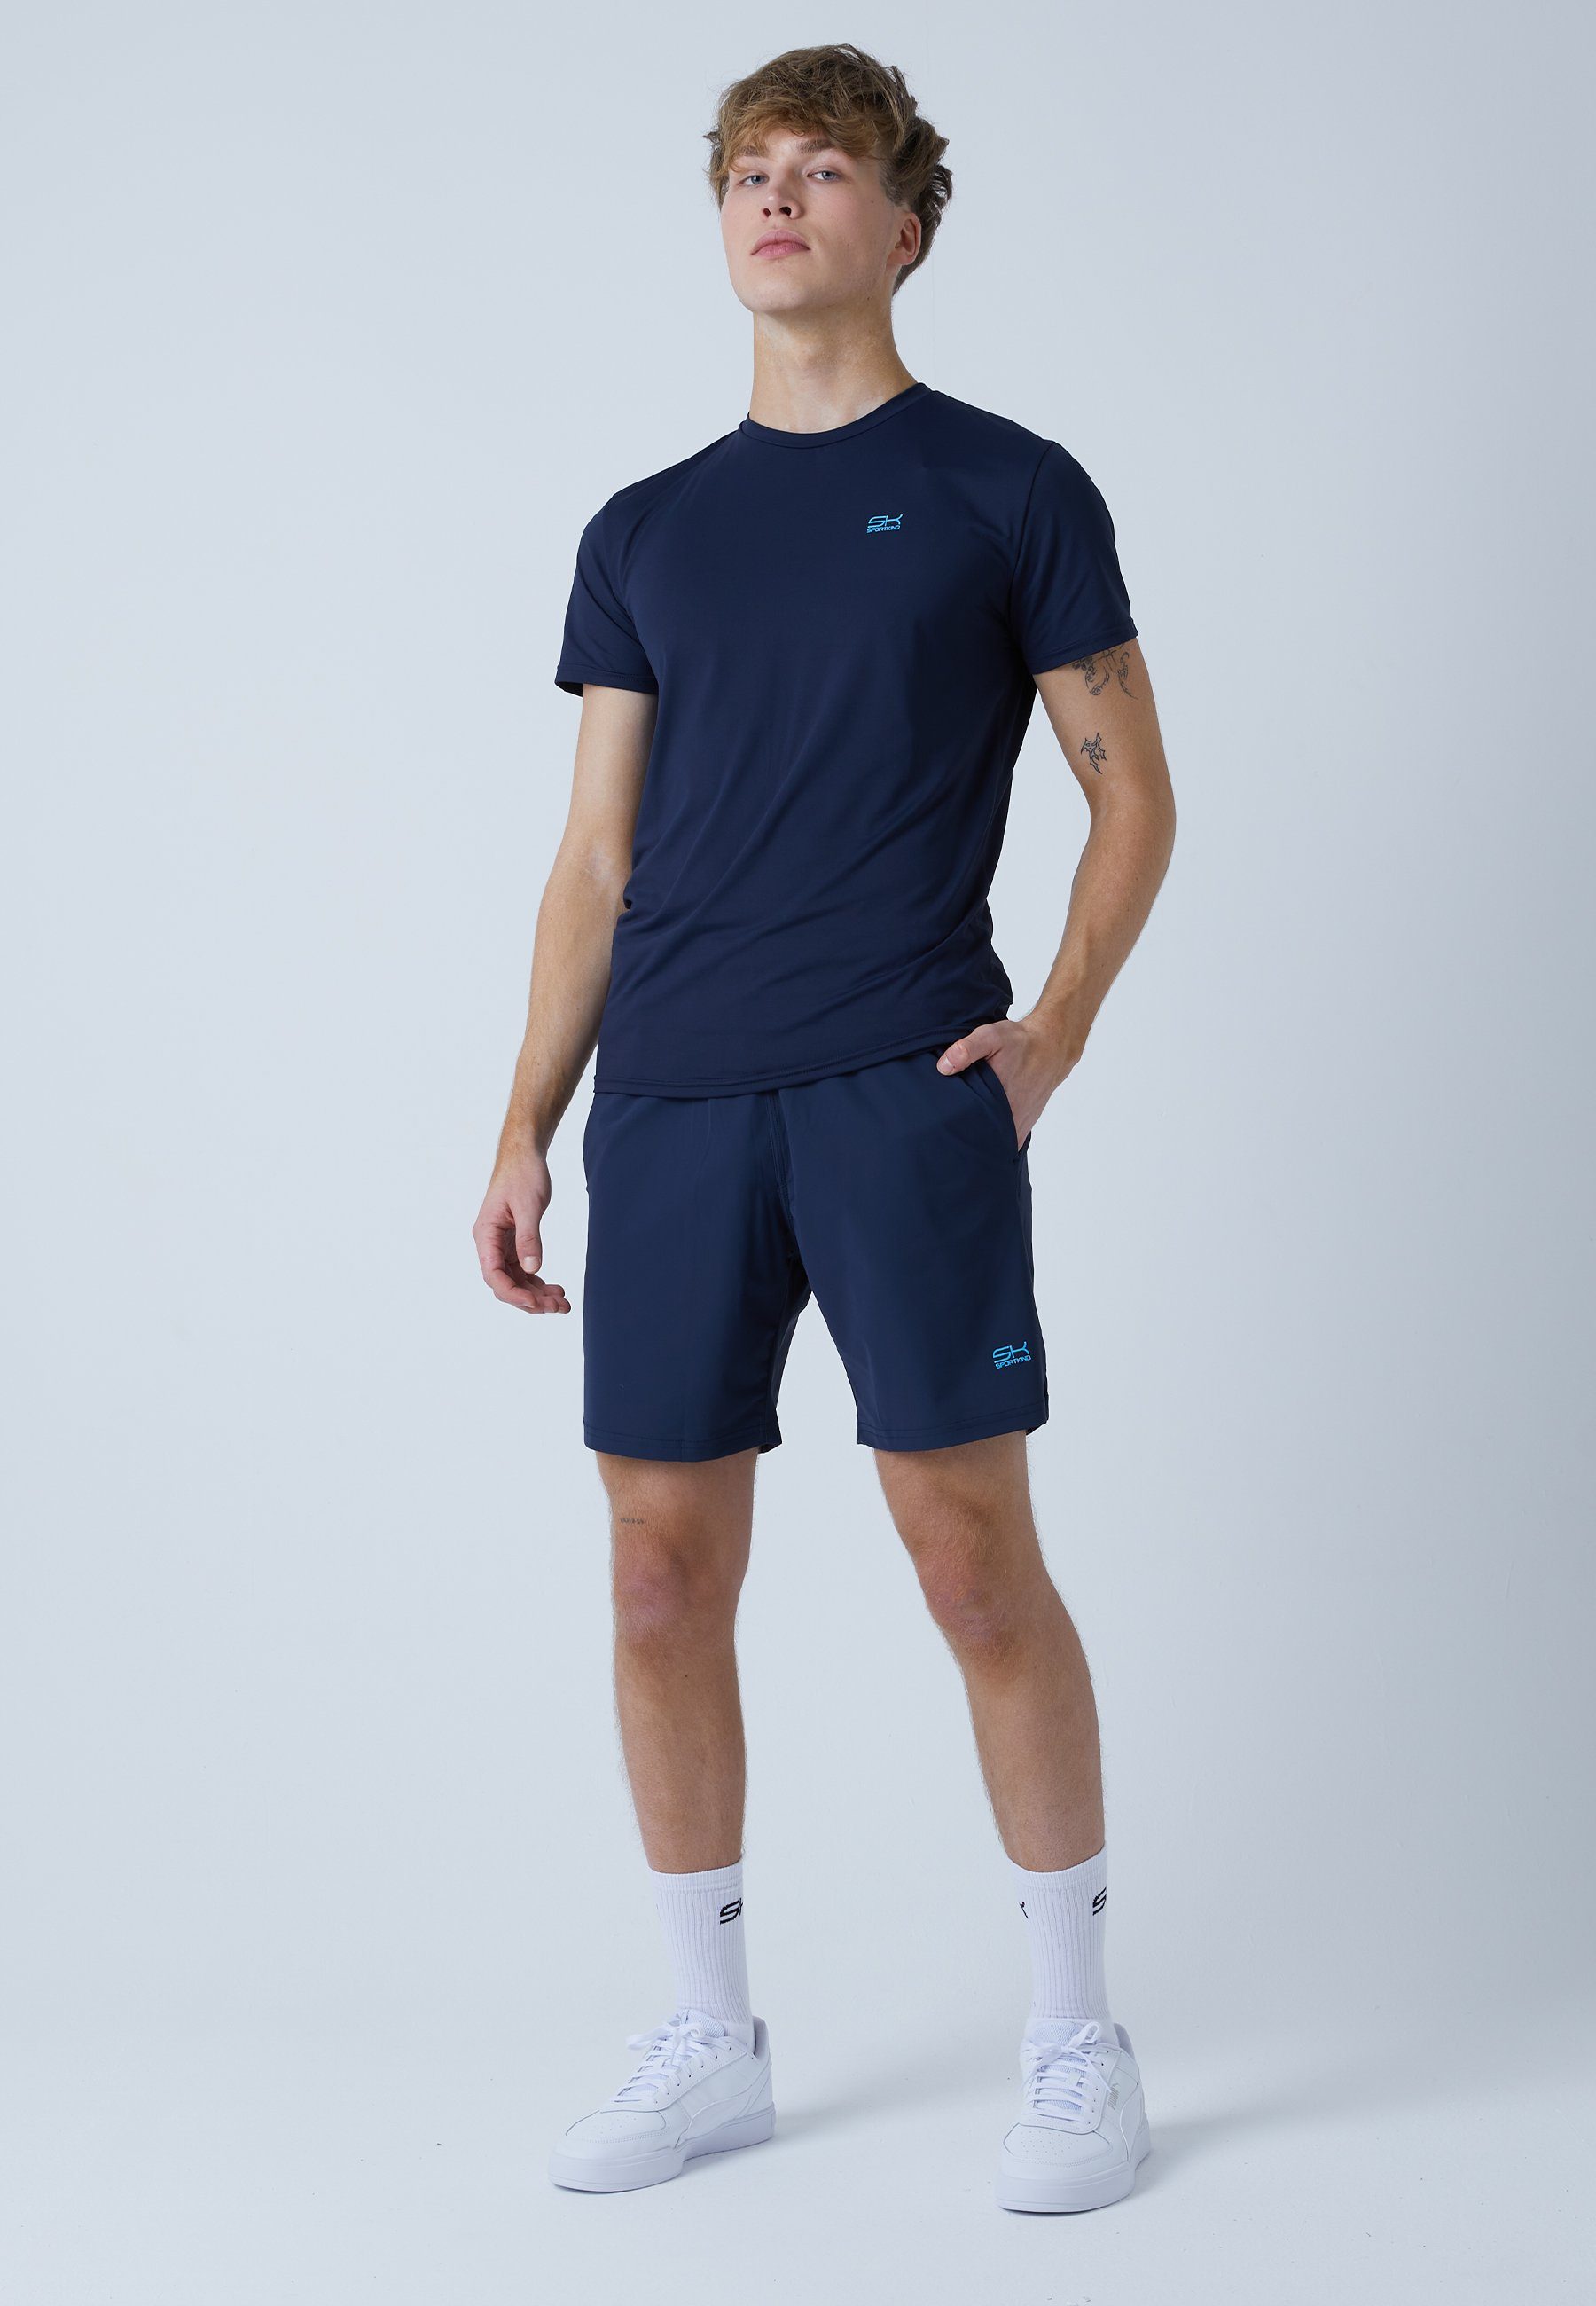 regular Tennis Herren navy blau Shorts Jungen & SPORTKIND Funktionsshorts